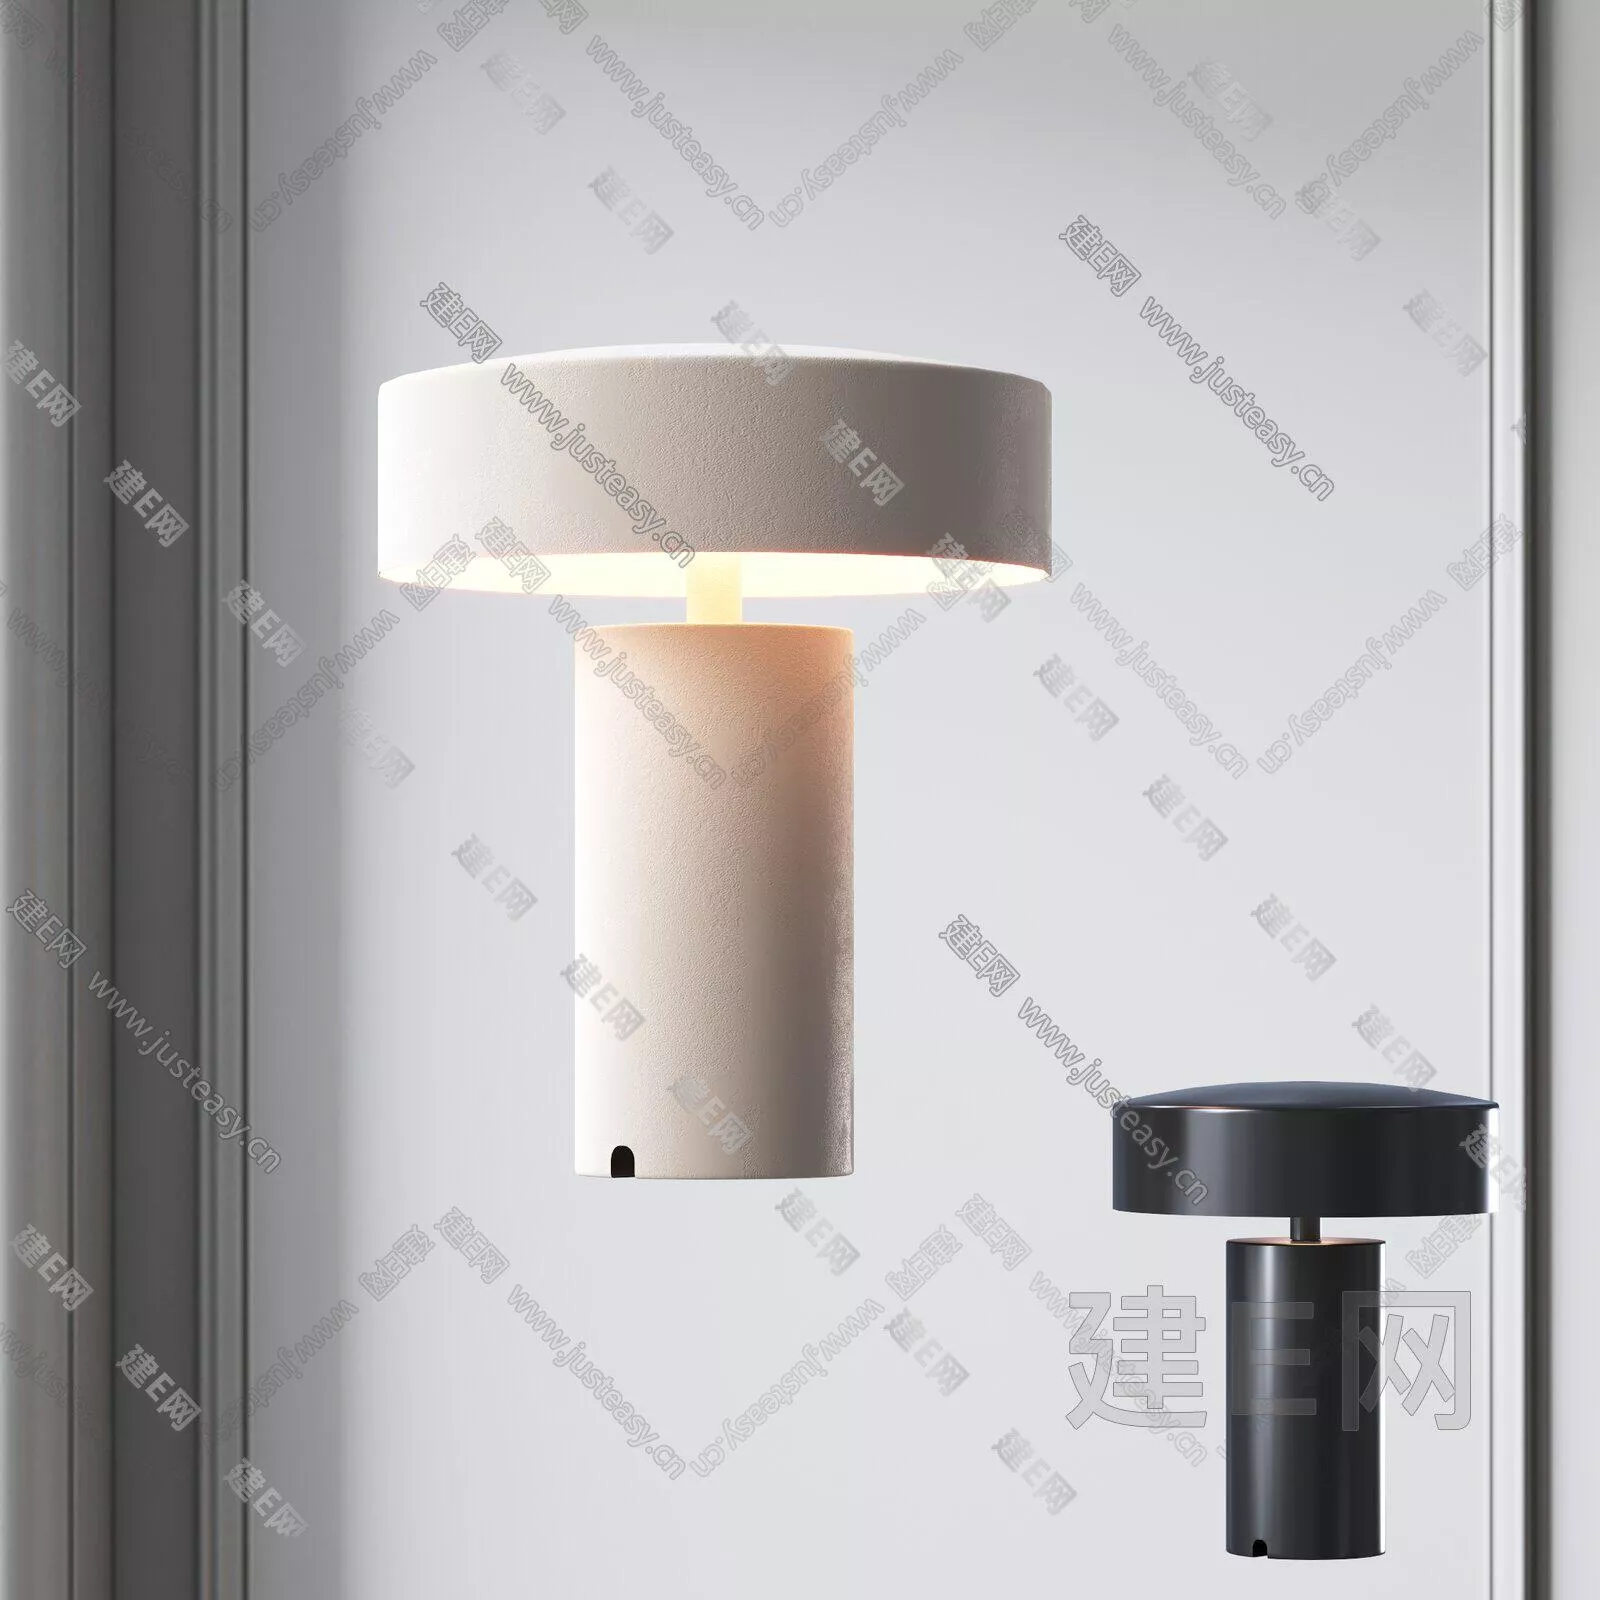 MODERN TABLE LAMP - SKETCHUP 3D MODEL - ENSCAPE - 106056752